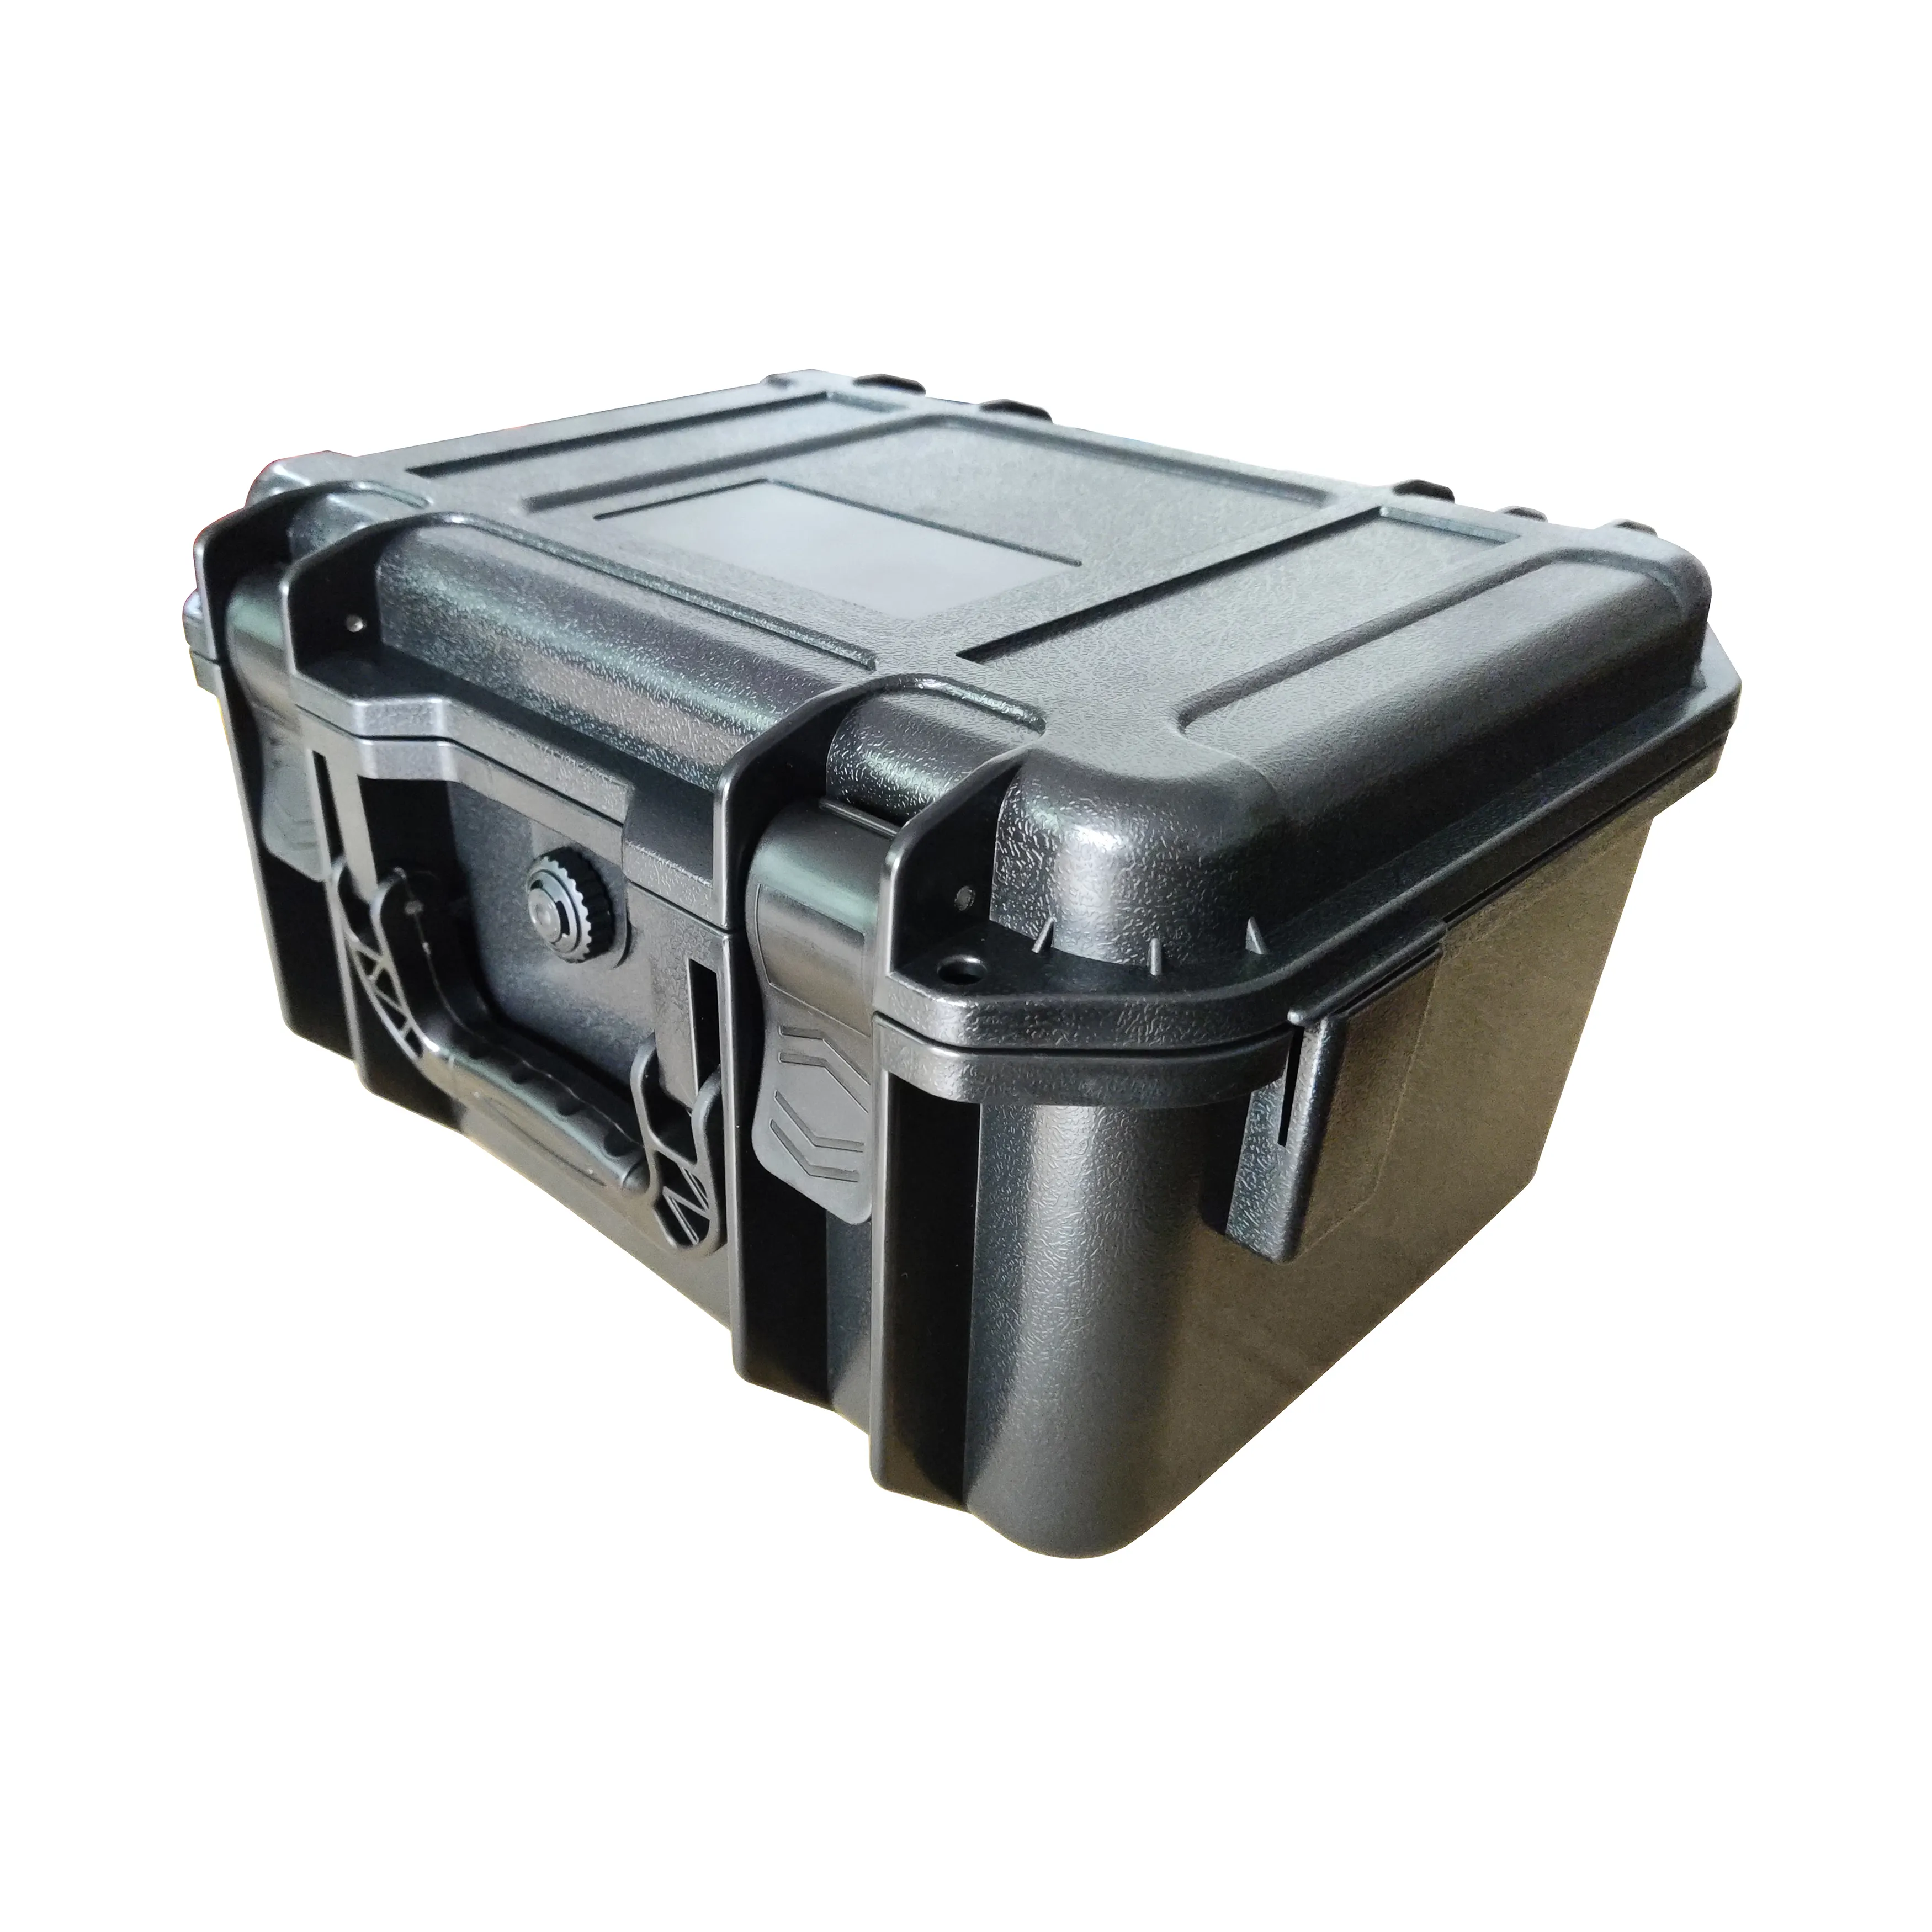 PP-M9255A пластиковый корпус с пеной для камеры, видео, оружие, тест и измерительное оборудование для водонепроницаемый жесткий пластиковый чехол для телефона